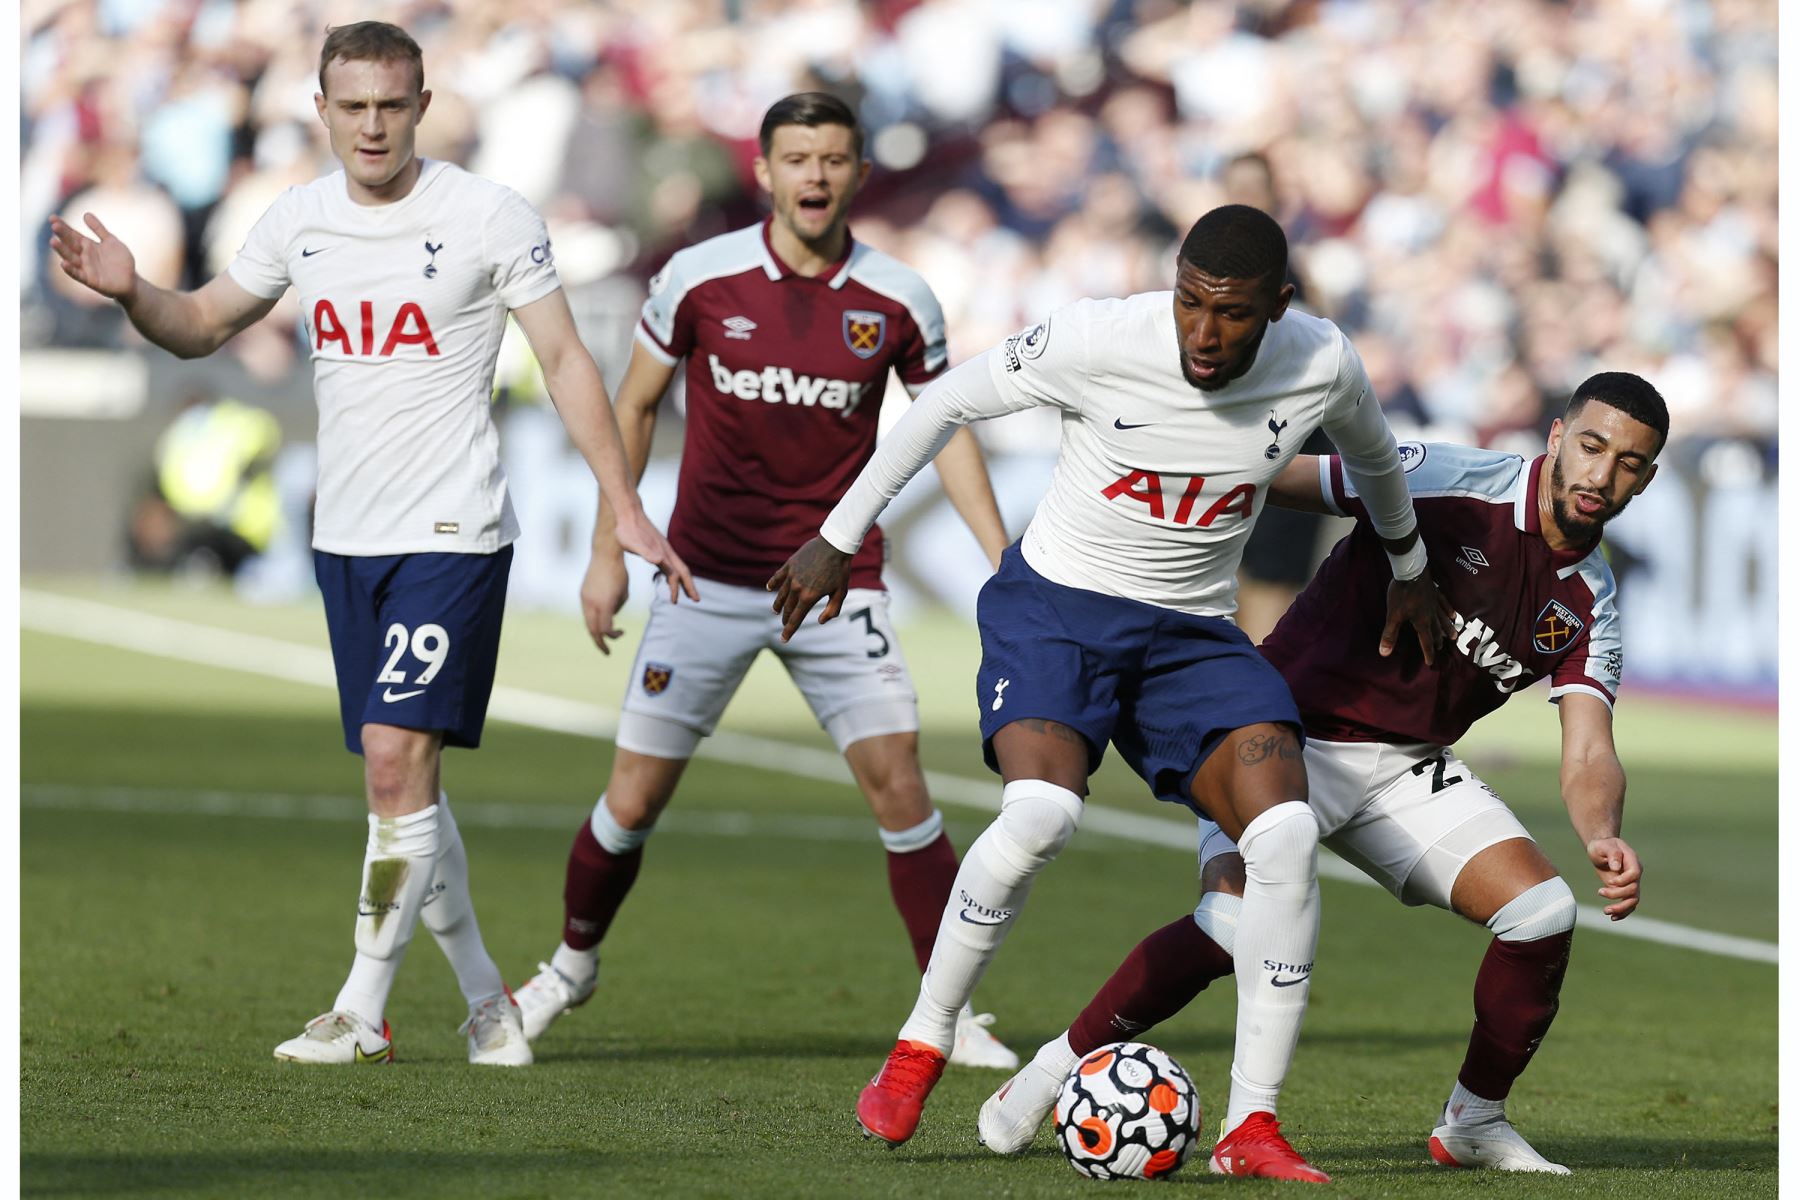 El defensor brasileño del Tottenham Hotspur Emerson Royal intenta contener al centrocampista argelino del West Ham United, Said Benrahma, durante el partido de la Premier League. Foto: AFP